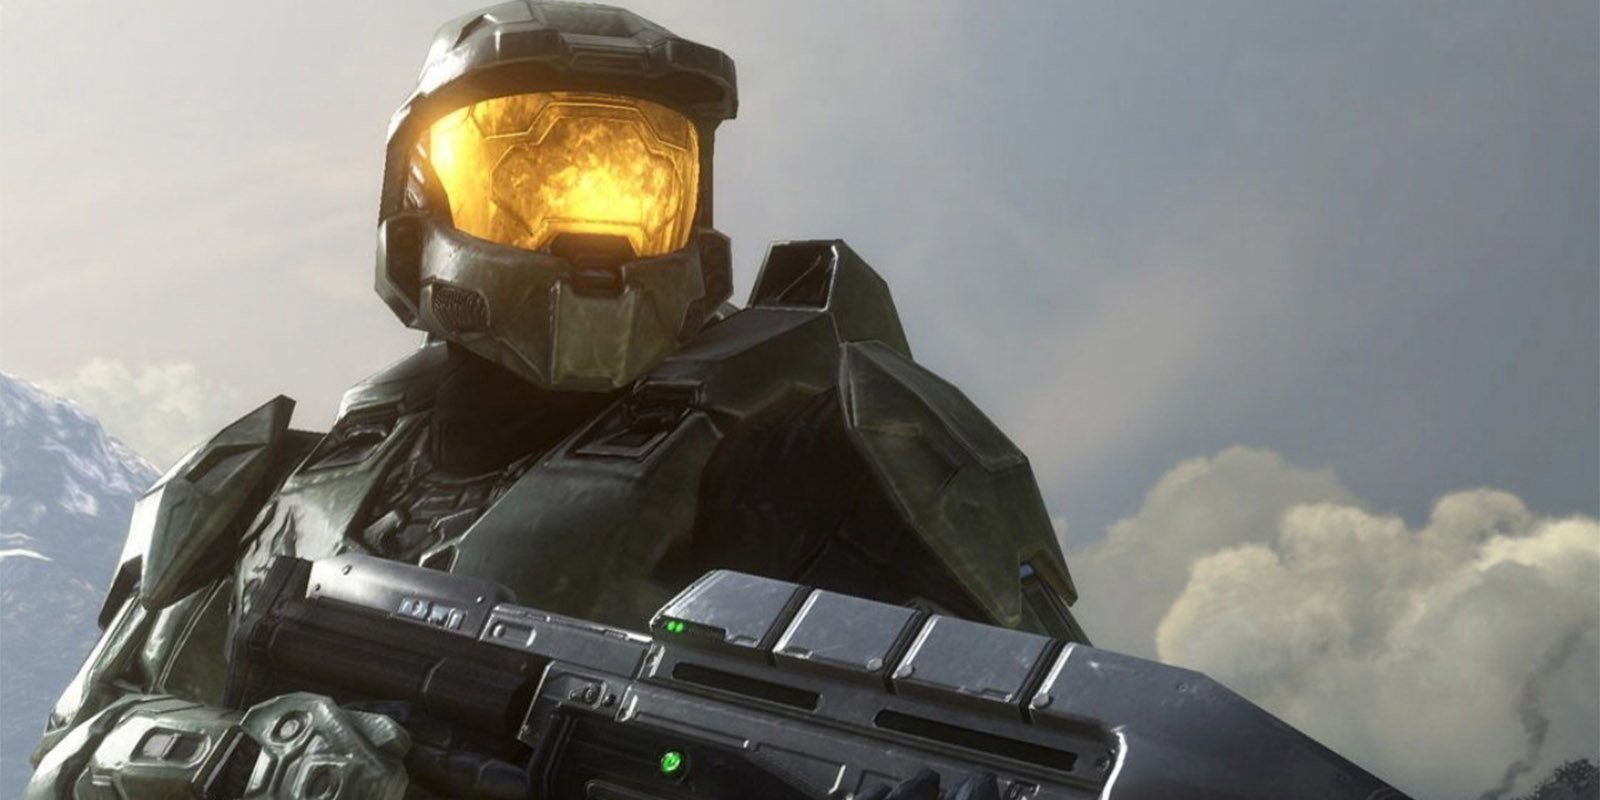 Confirmado, 343 industries está trabajando en un nuevo 'Halo'